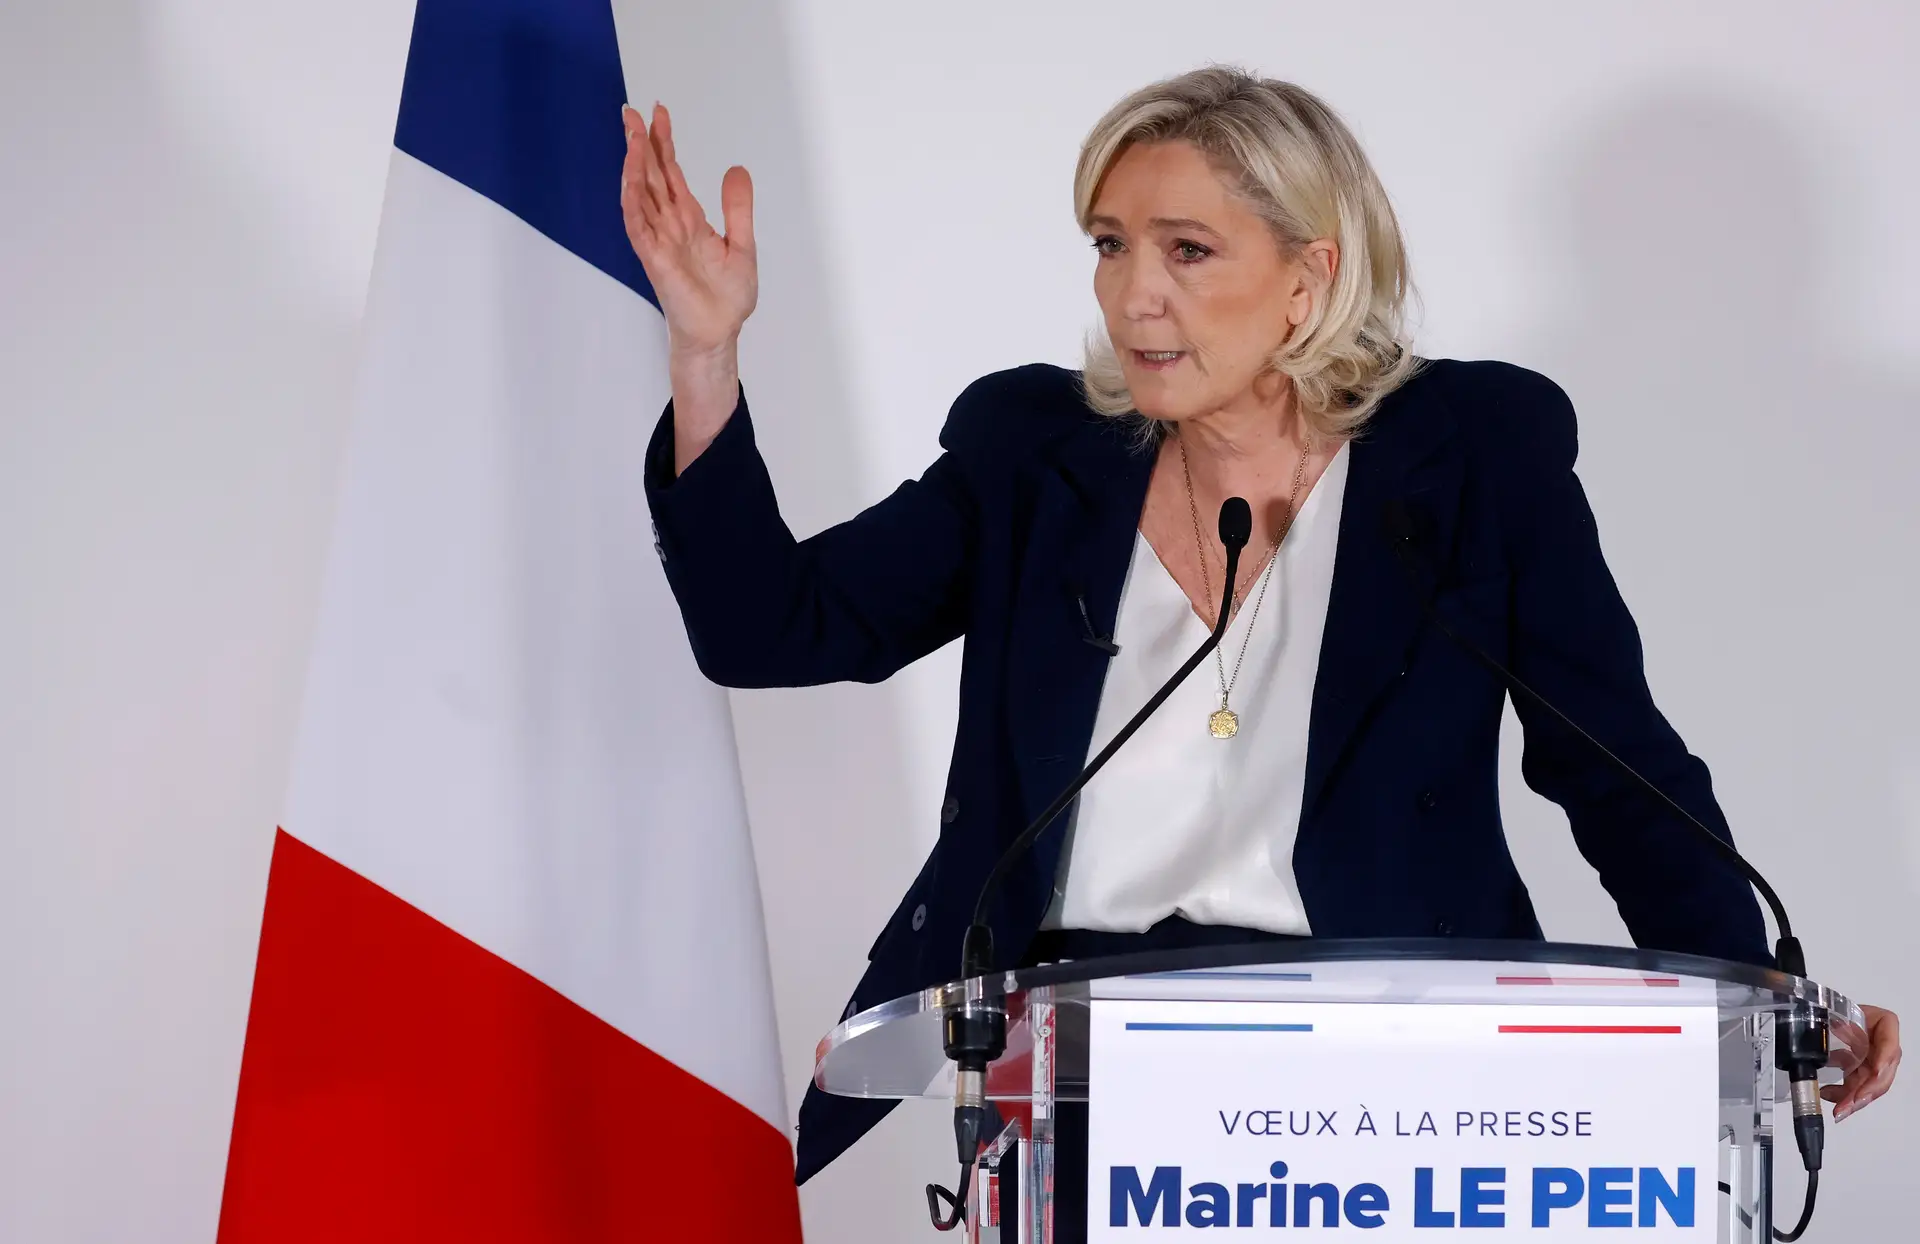 Marine Le Pen garante estar pronta para governar França - SIC Notícias